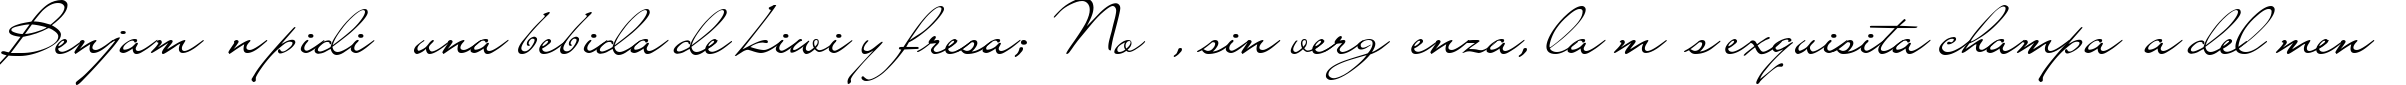 Пример написания шрифтом LainyDay текста на испанском